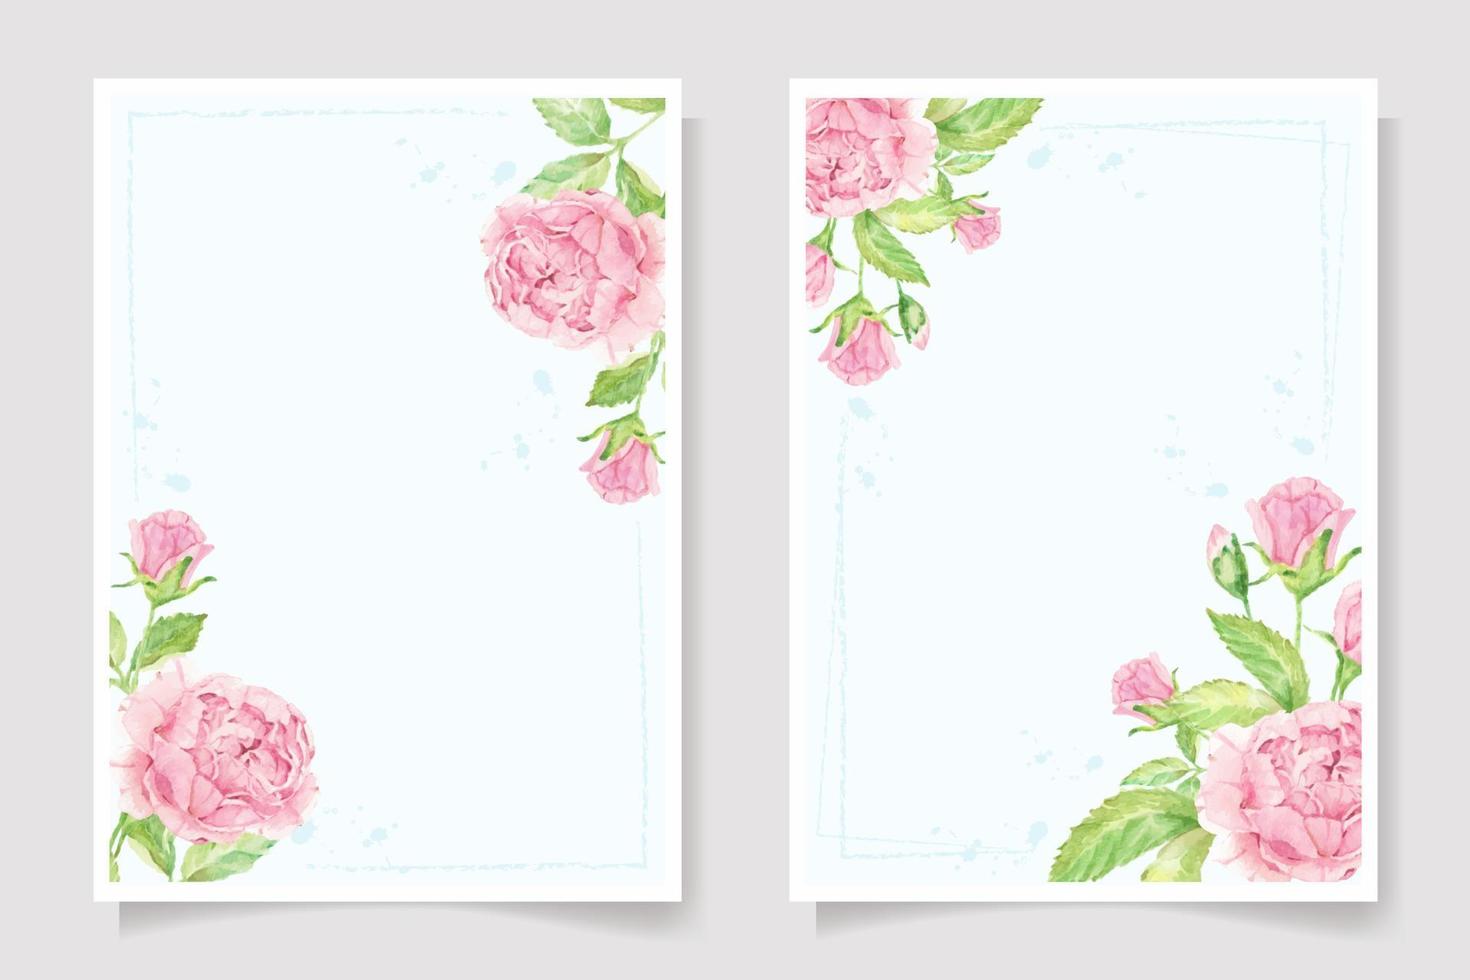 aquarell rosa rose blume zweig blumenstrauß hochzeit einladungskarte vorlage sammlung vektor